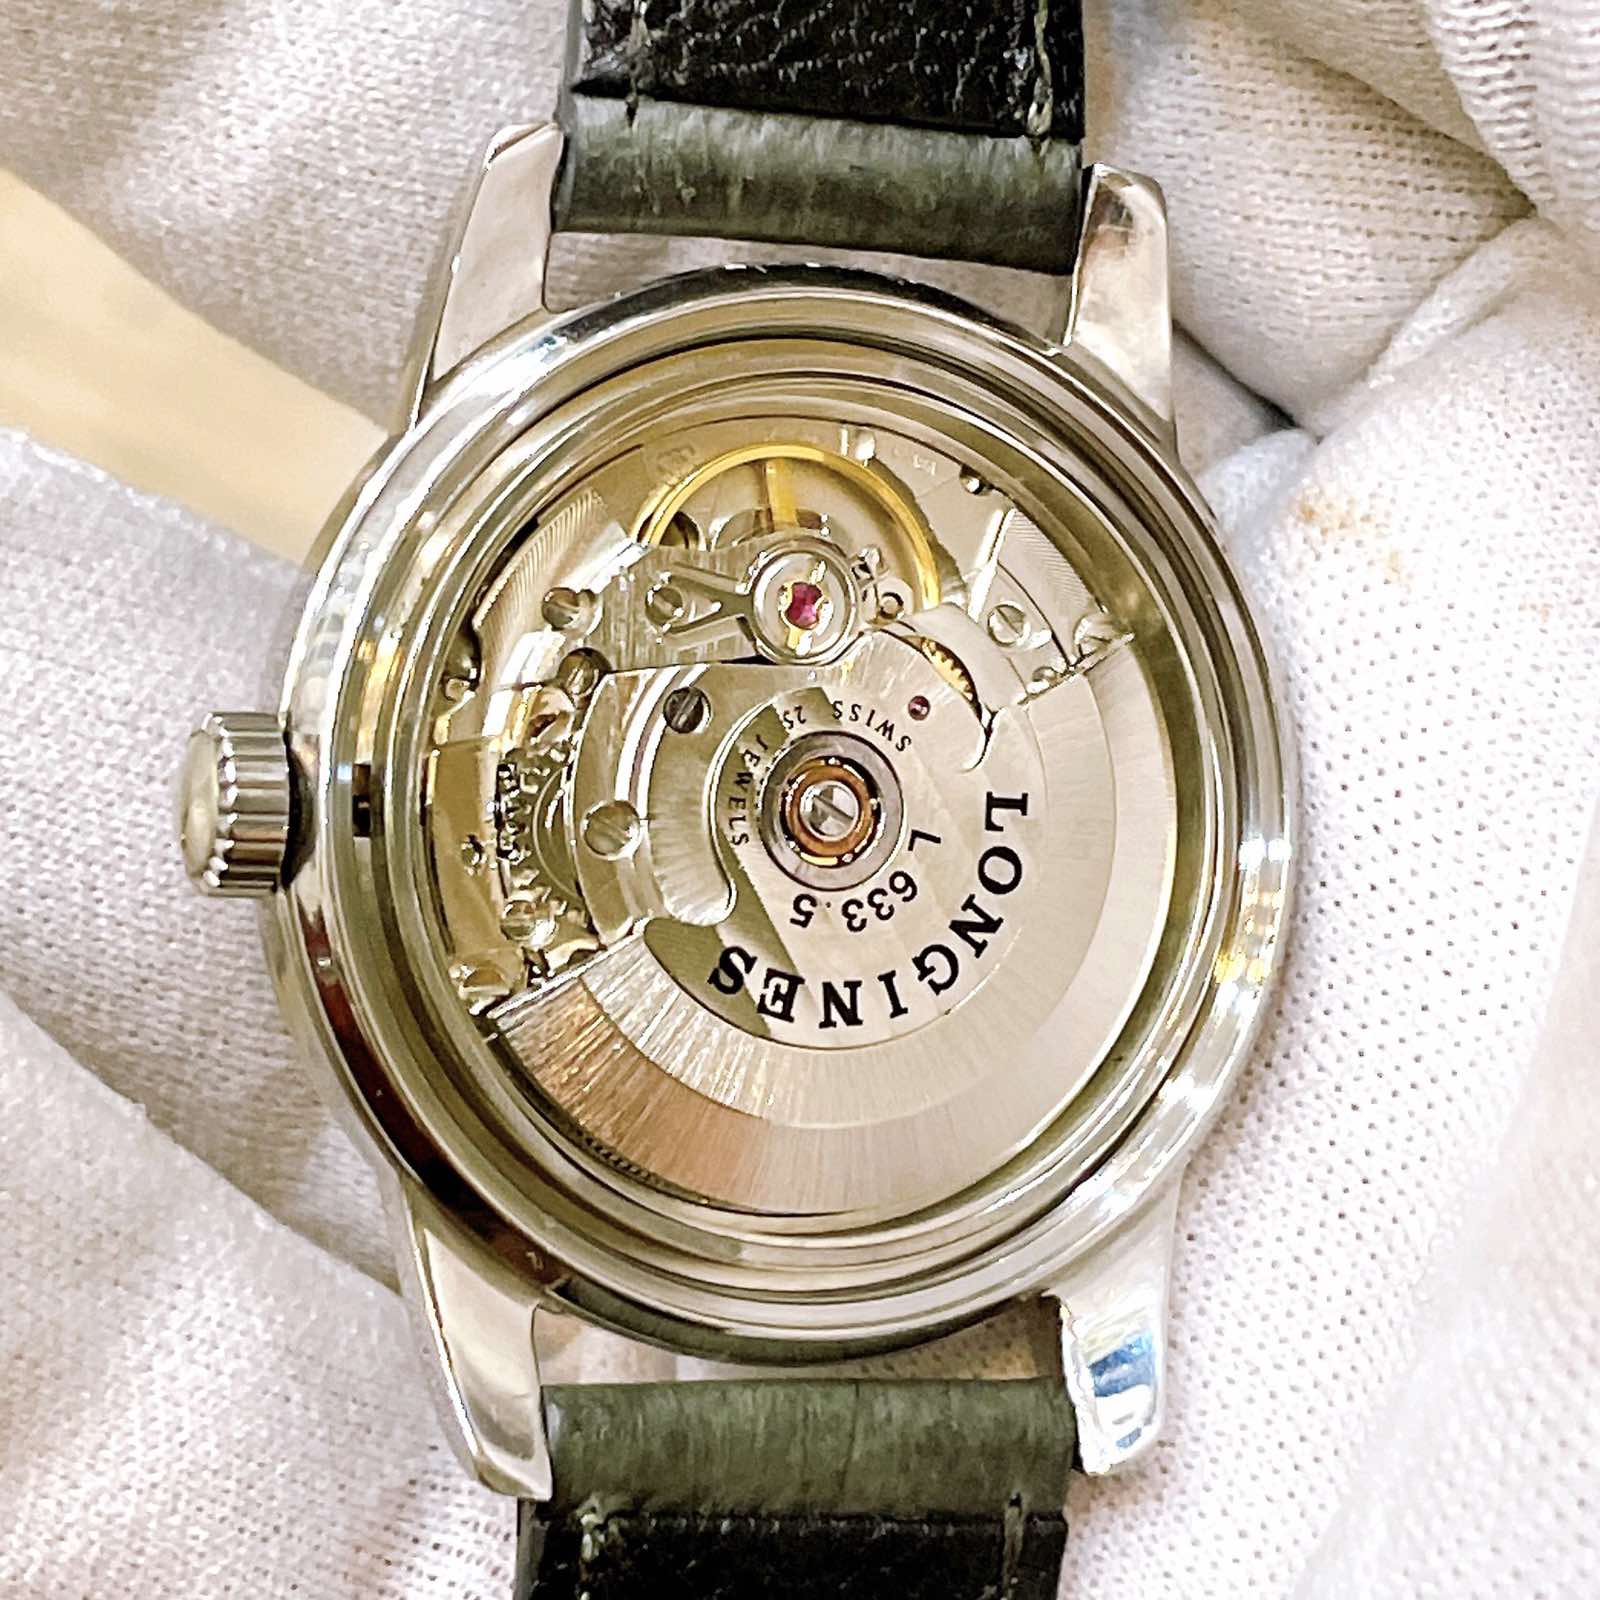 Đồng hồ cổ Longines Conquest Automatic chính hãng thụy Sĩ